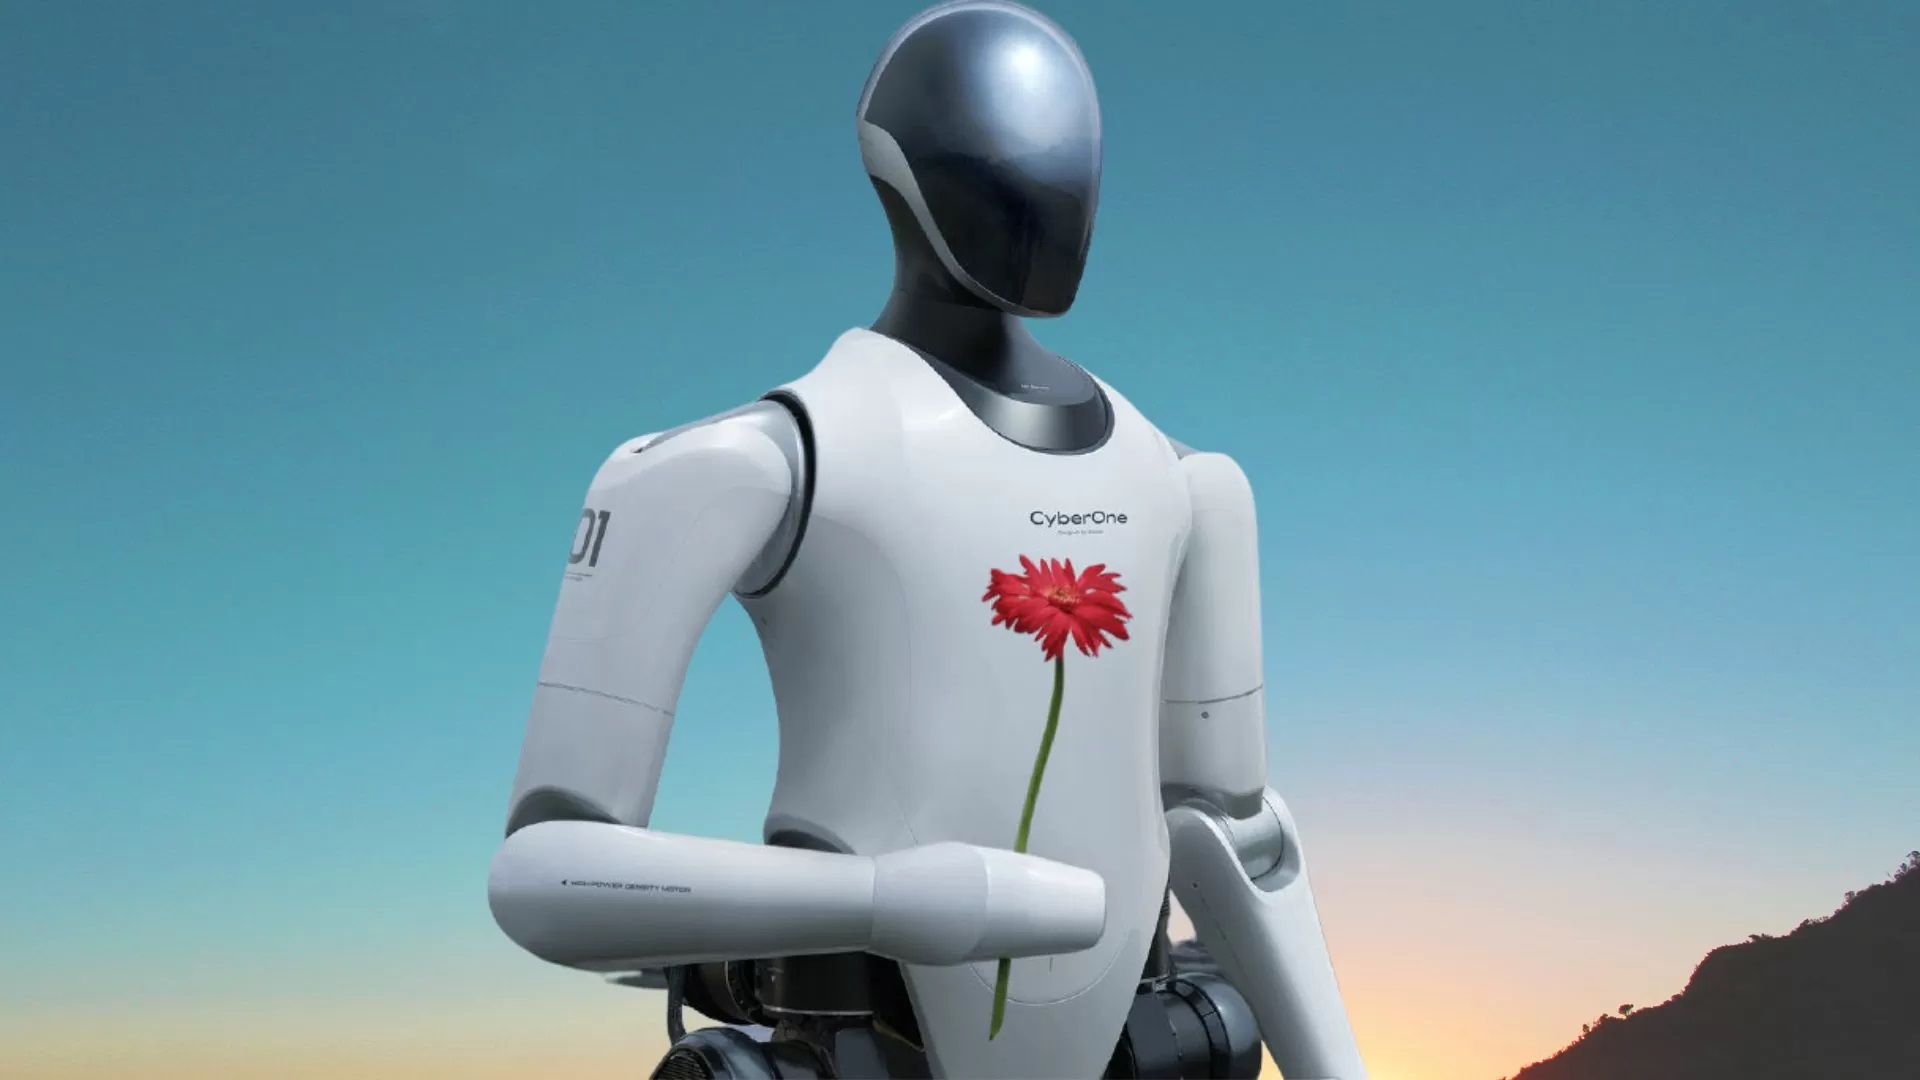 Xiaomi dévoile le robot humanoïde CyberOne : il peut communiquer, reconnaître les émotions et offrir des fleurs